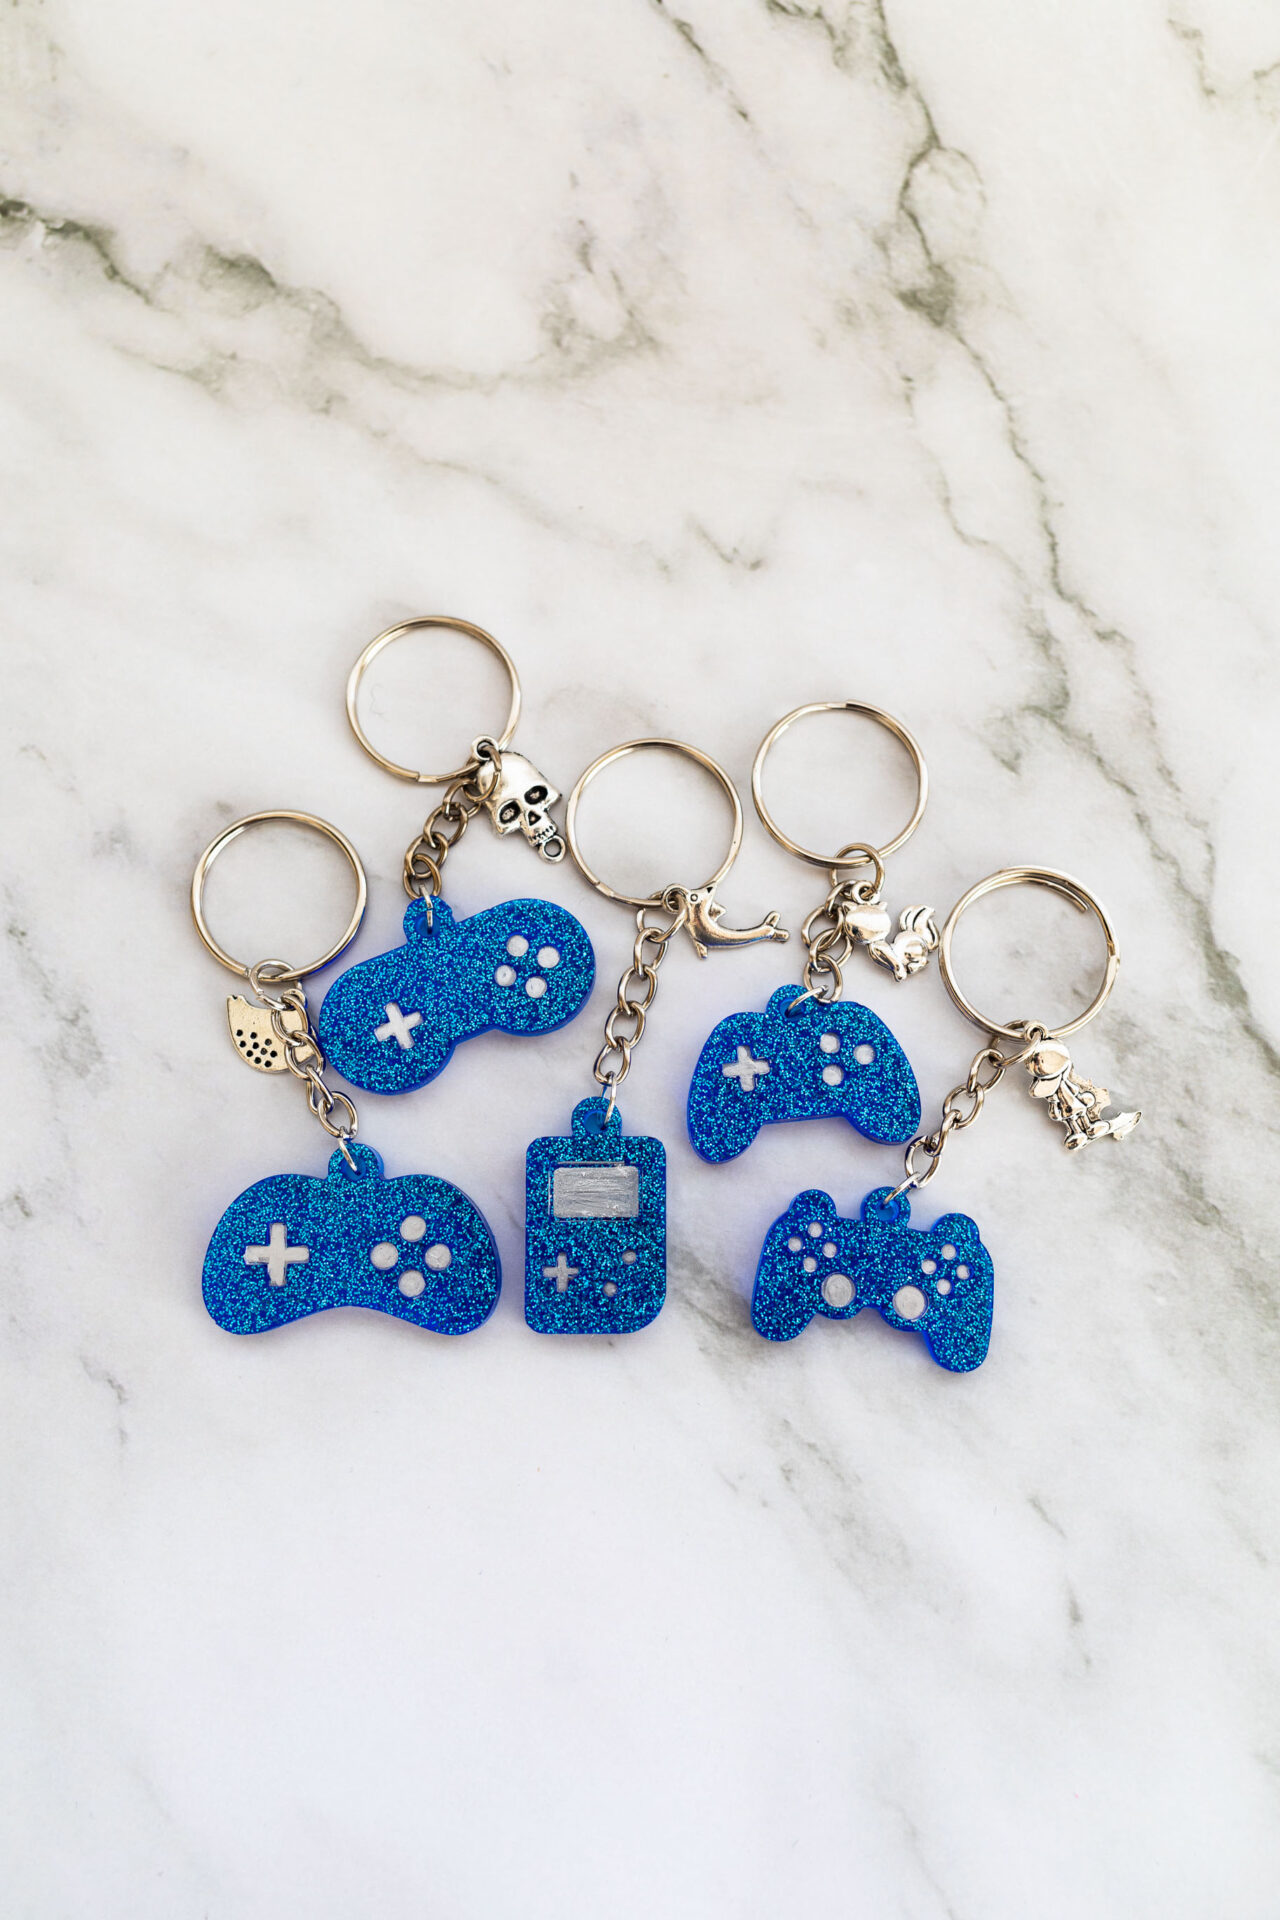 Porte clé manette vidéo bleu paillette - Boutique en ligne d'idées cadeau et de décoration en jesmonite et en résine